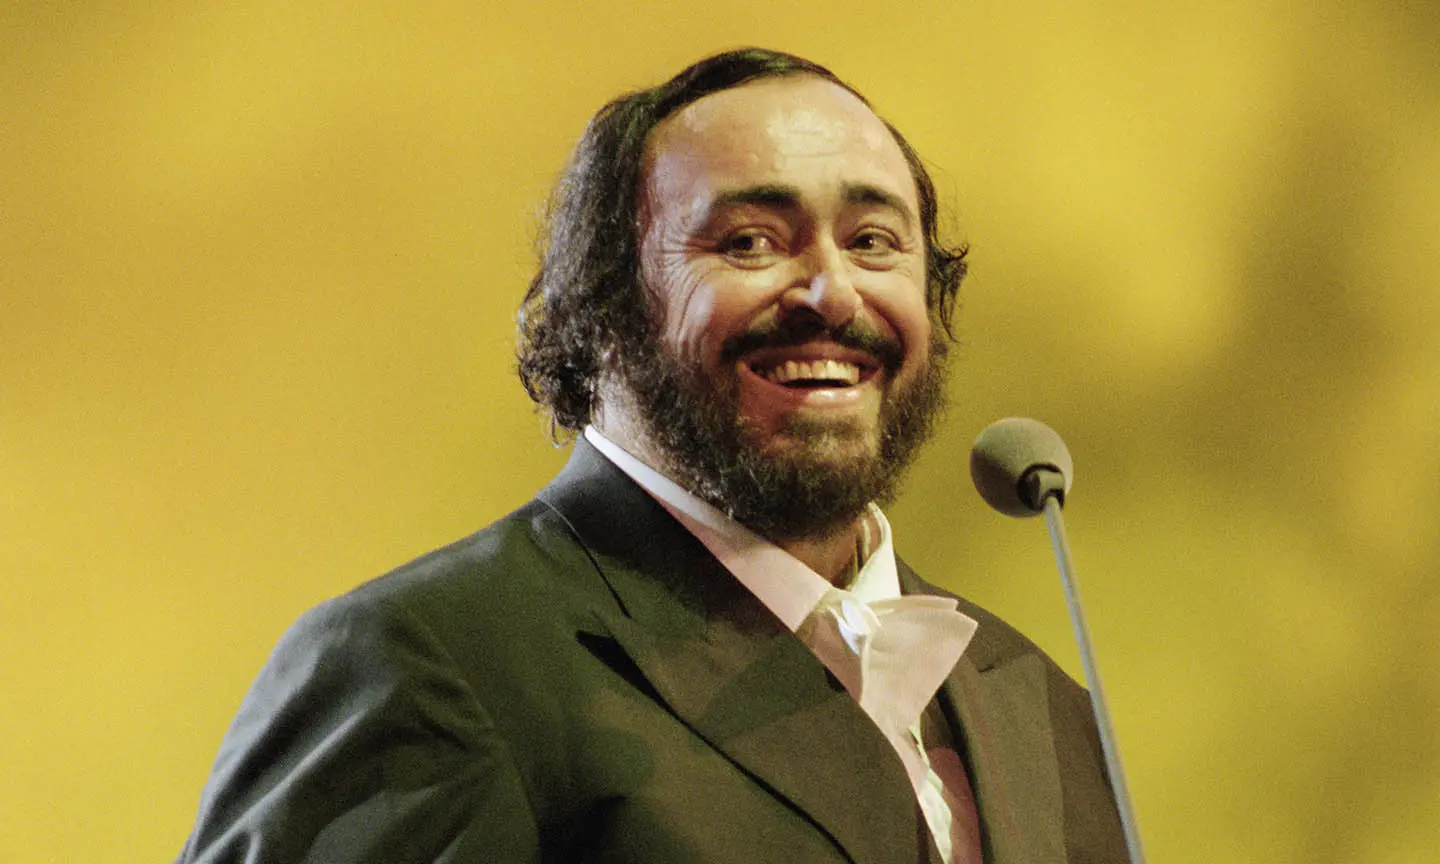 Statua in bronzo di Luciano Pavarotti svelata a Pesaro, Italia